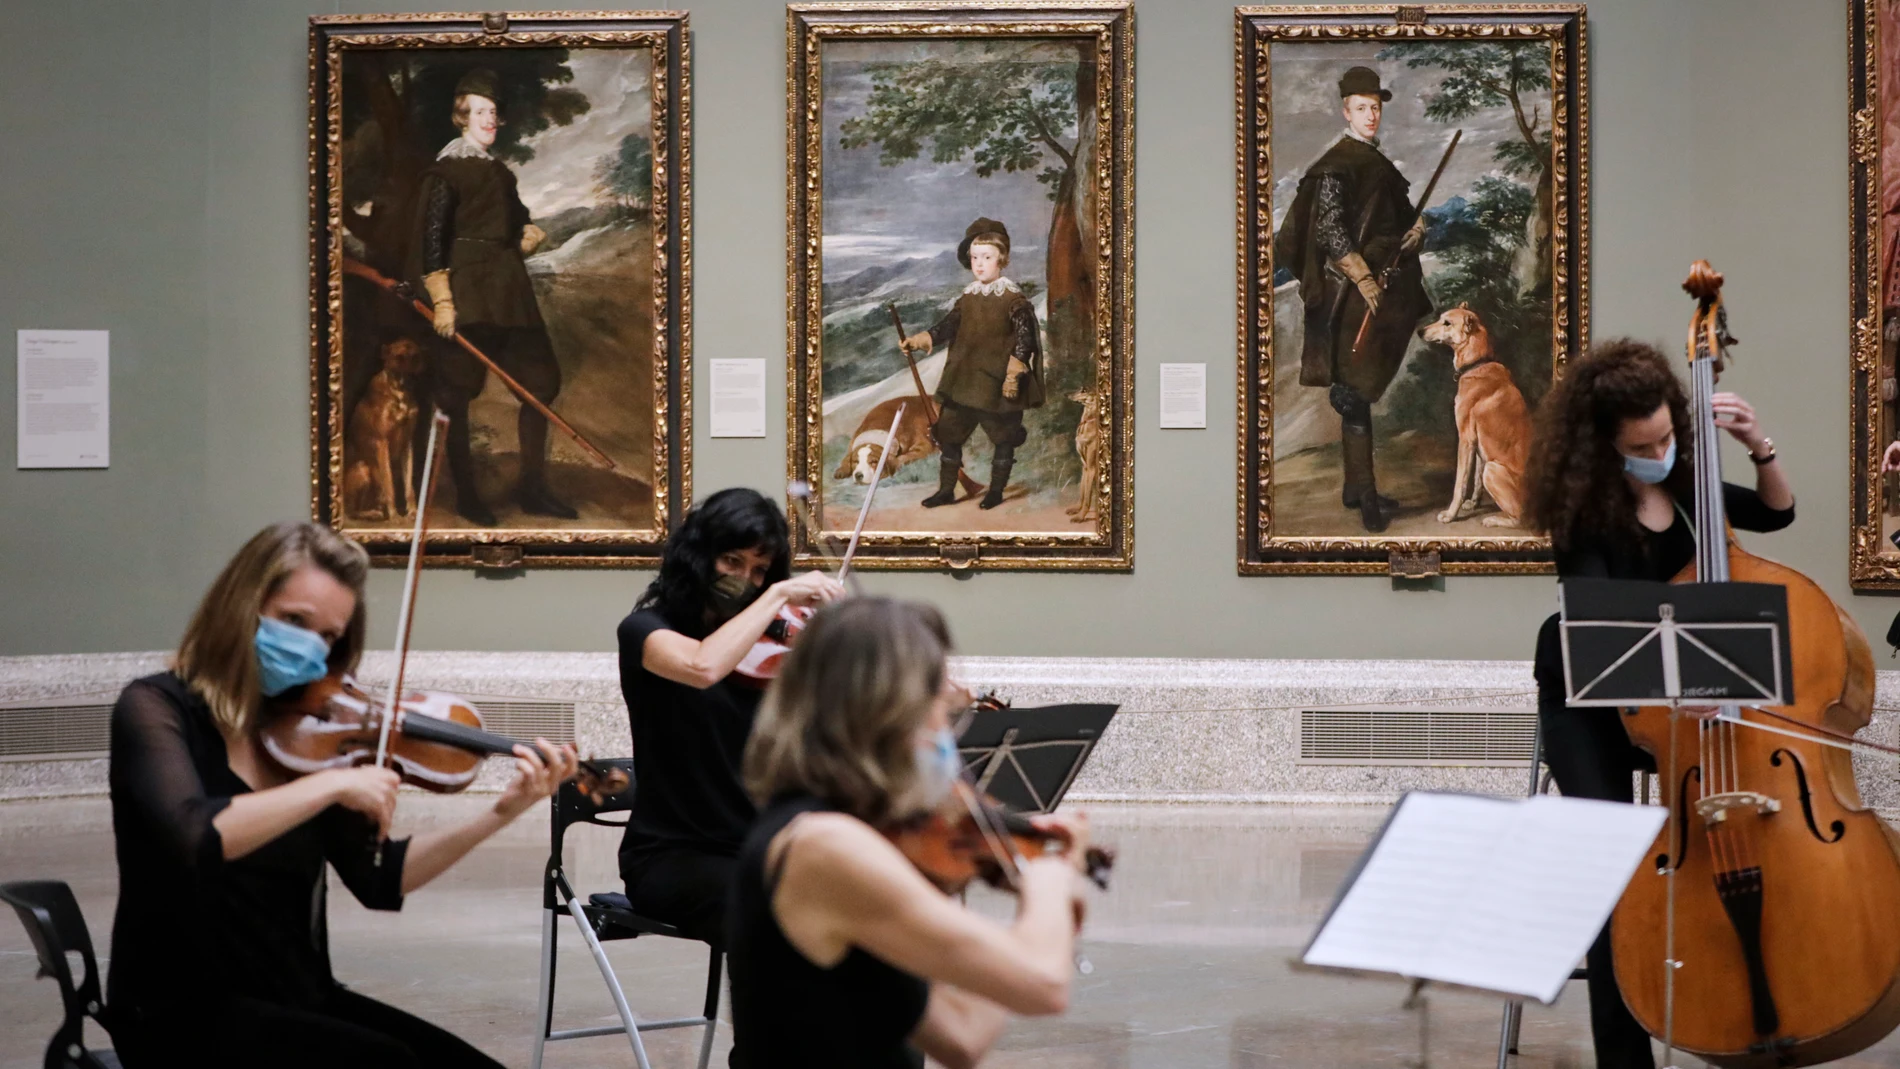 La Sala XII del Museo del Prado, la dedicada a Velázquez, reabrió con un quinteto que interpretó el "Himno de la alegría"